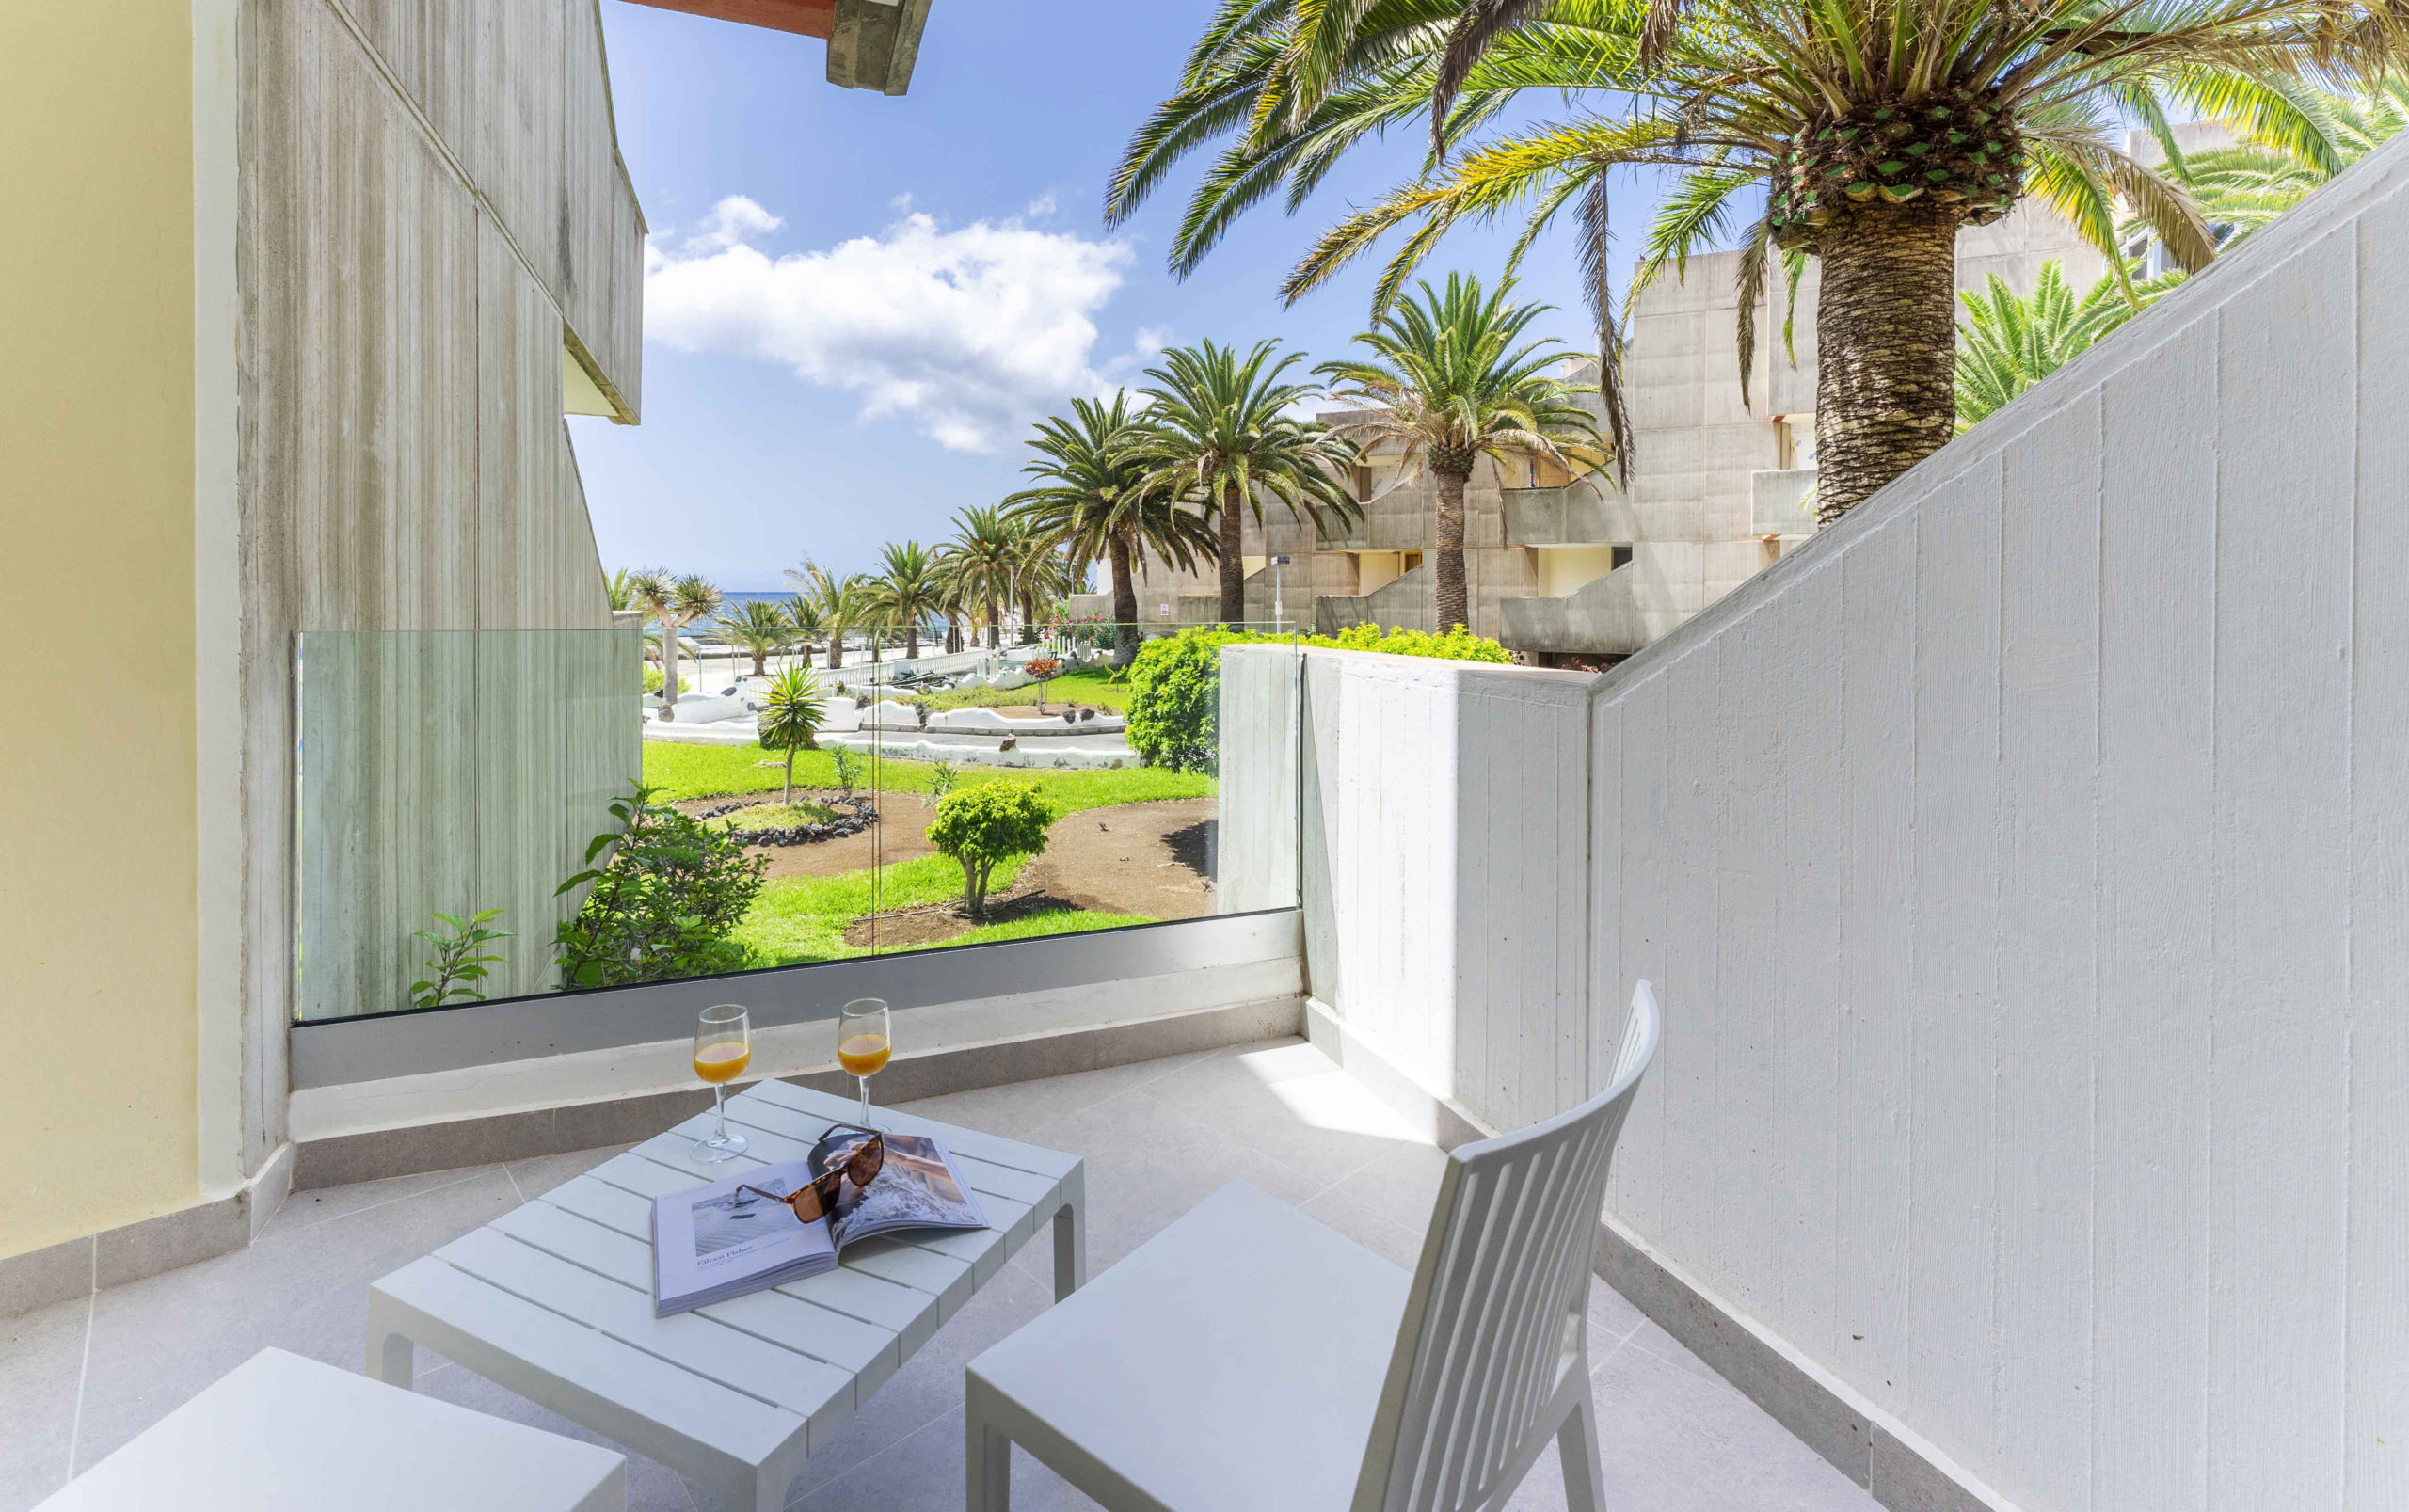 Ona Hotels & Apartments cierra la temporada de verano con un aumento de ocupación del 30%